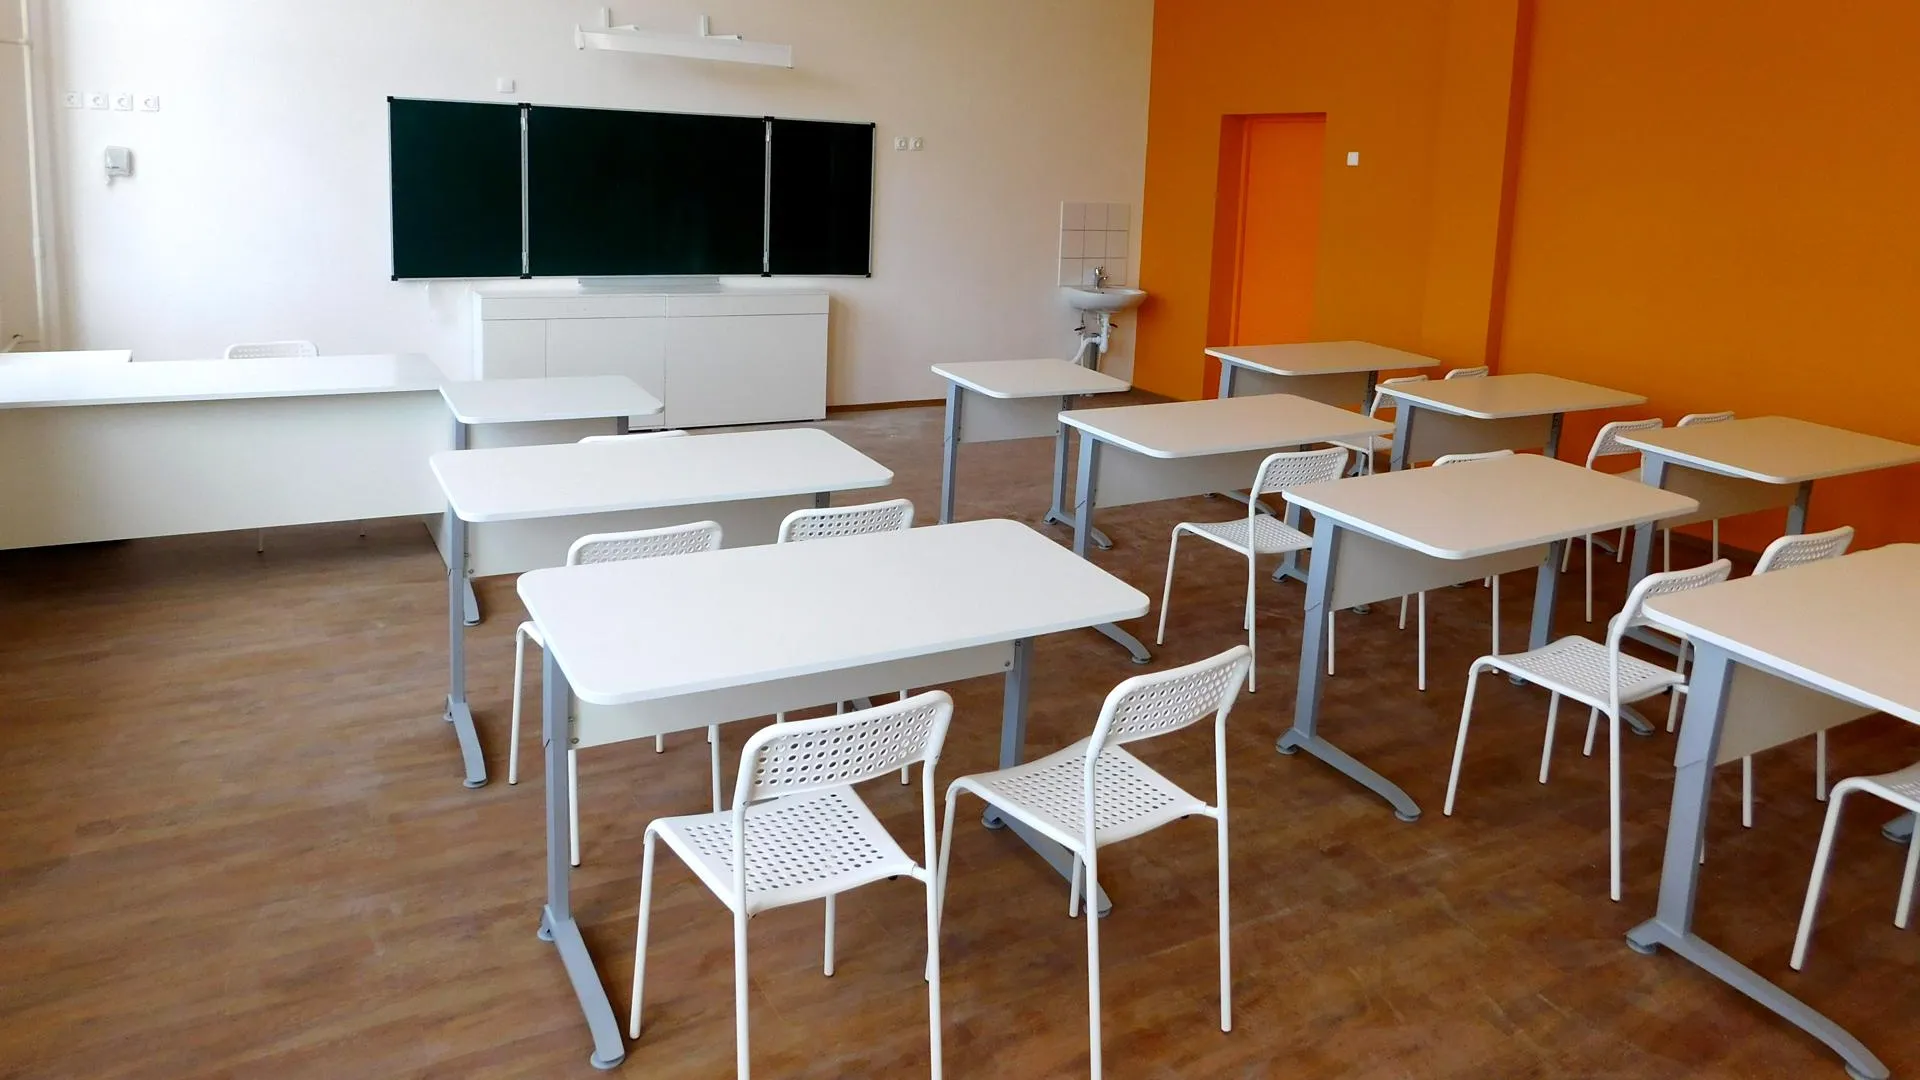 Около 300 млн руб выделили на подготовку школ Сергиево-Посадского района к учебному году